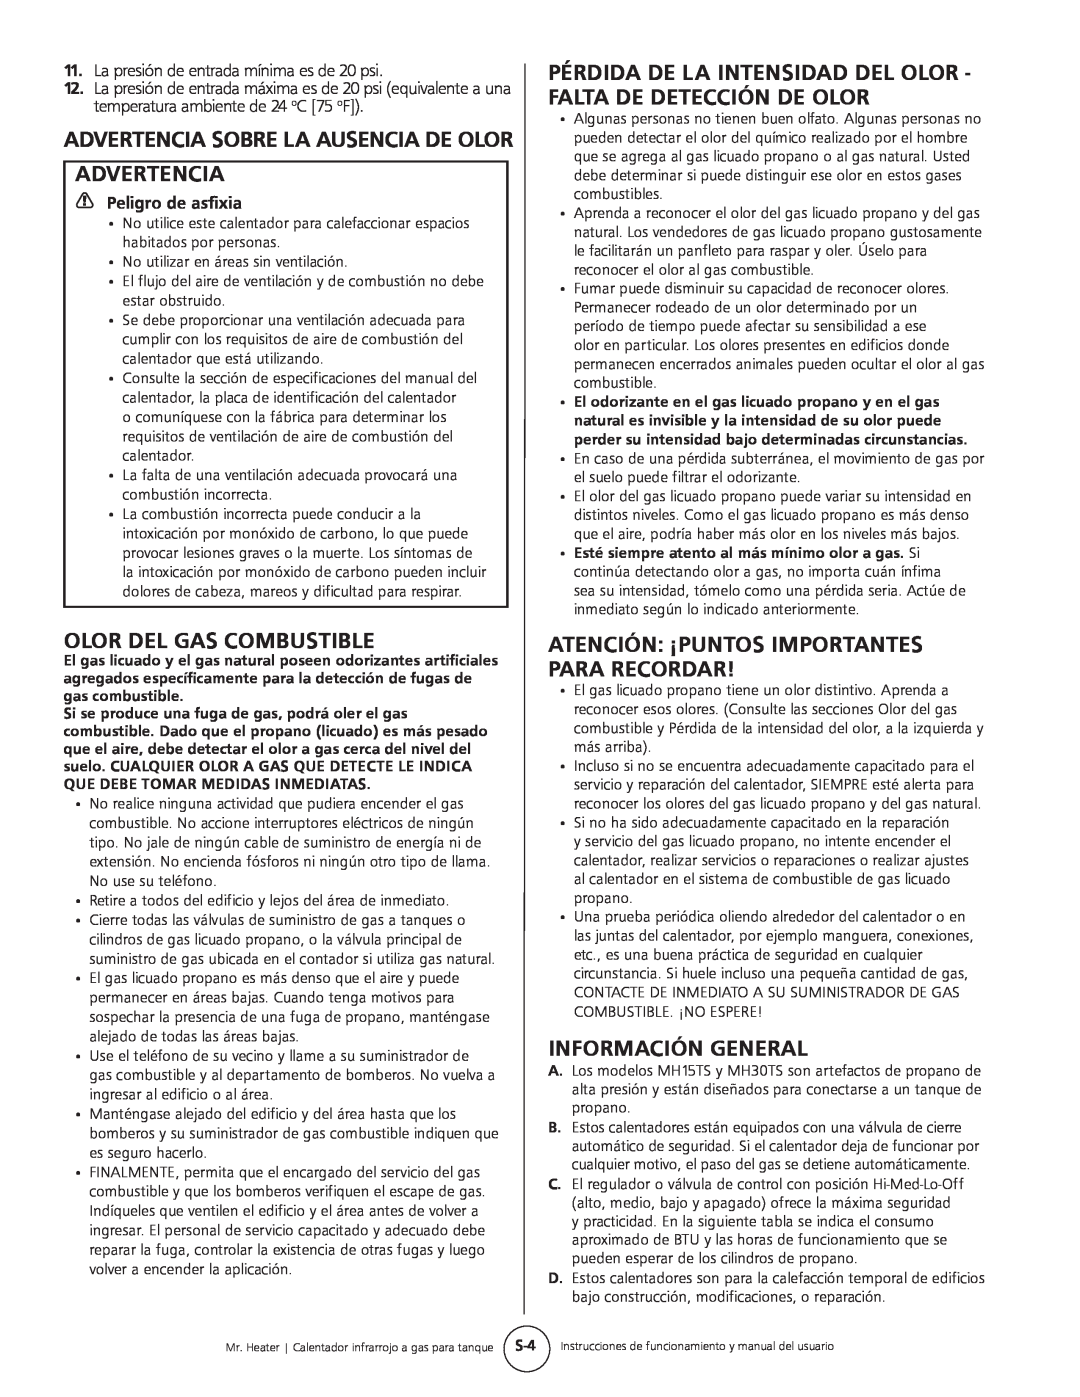 Mr. Heater MH15tS Advertencia Sobre La Ausencia De Olor Advertencia, Olor Del Gas Combustible, Información General 